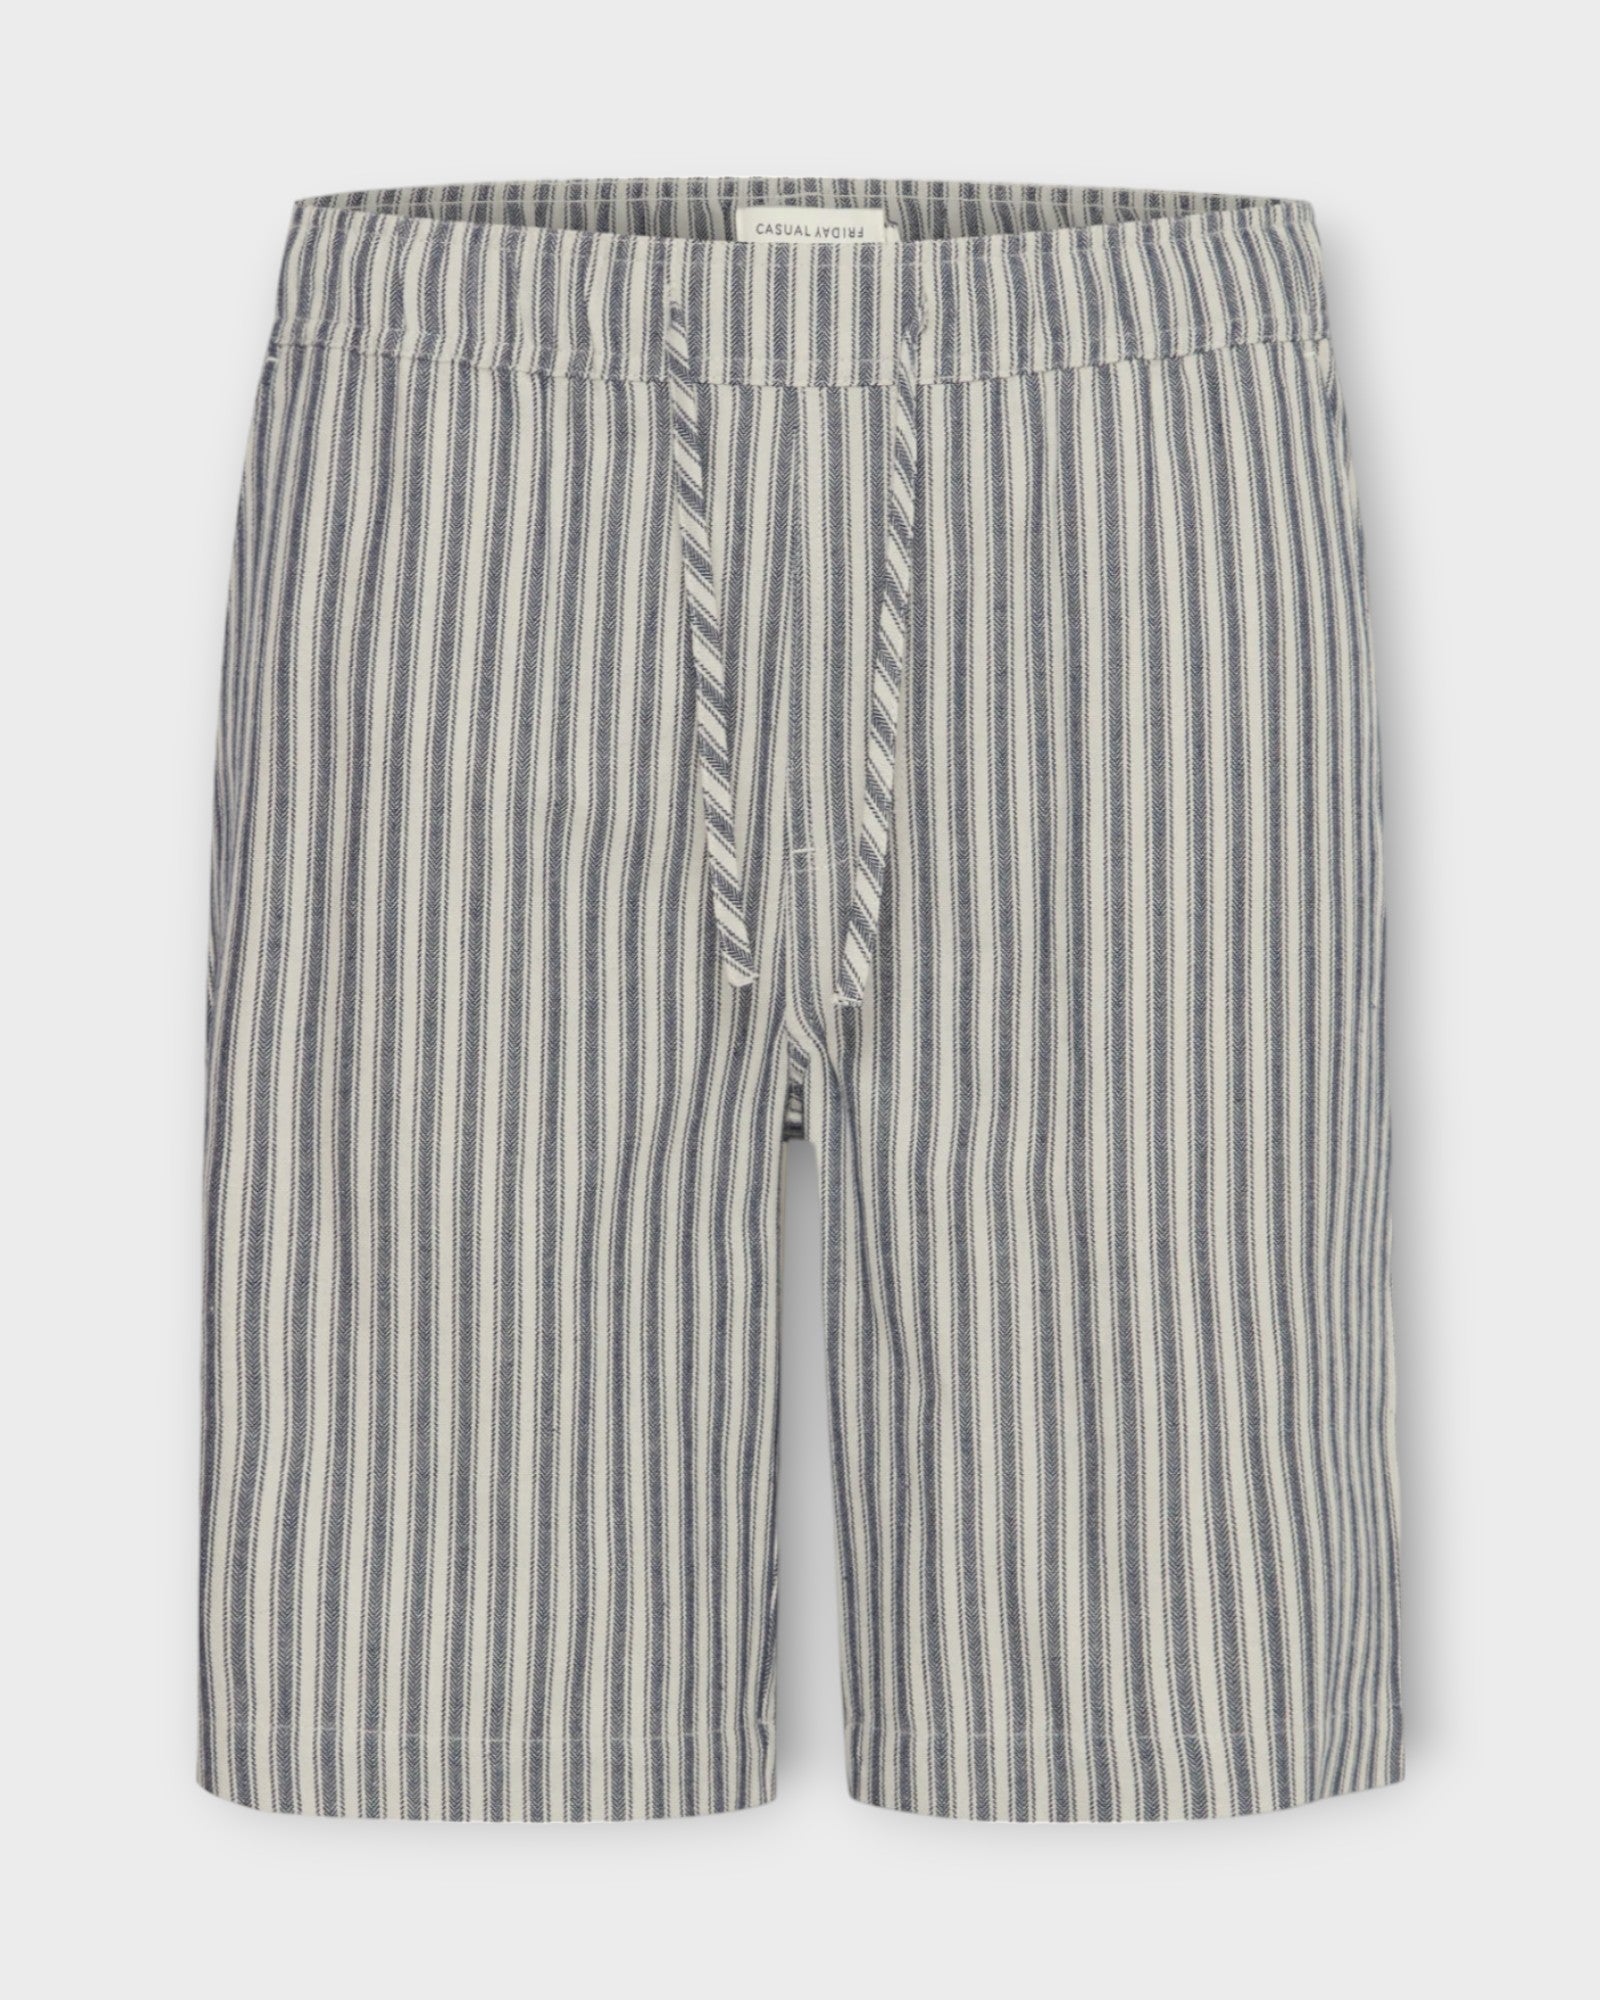 Phelix Striped Shorts  Dark Navy, et par stribet Casual Friday hør shorts til mænd. Regular fit med snører og elastik i livet. Her set forfra.